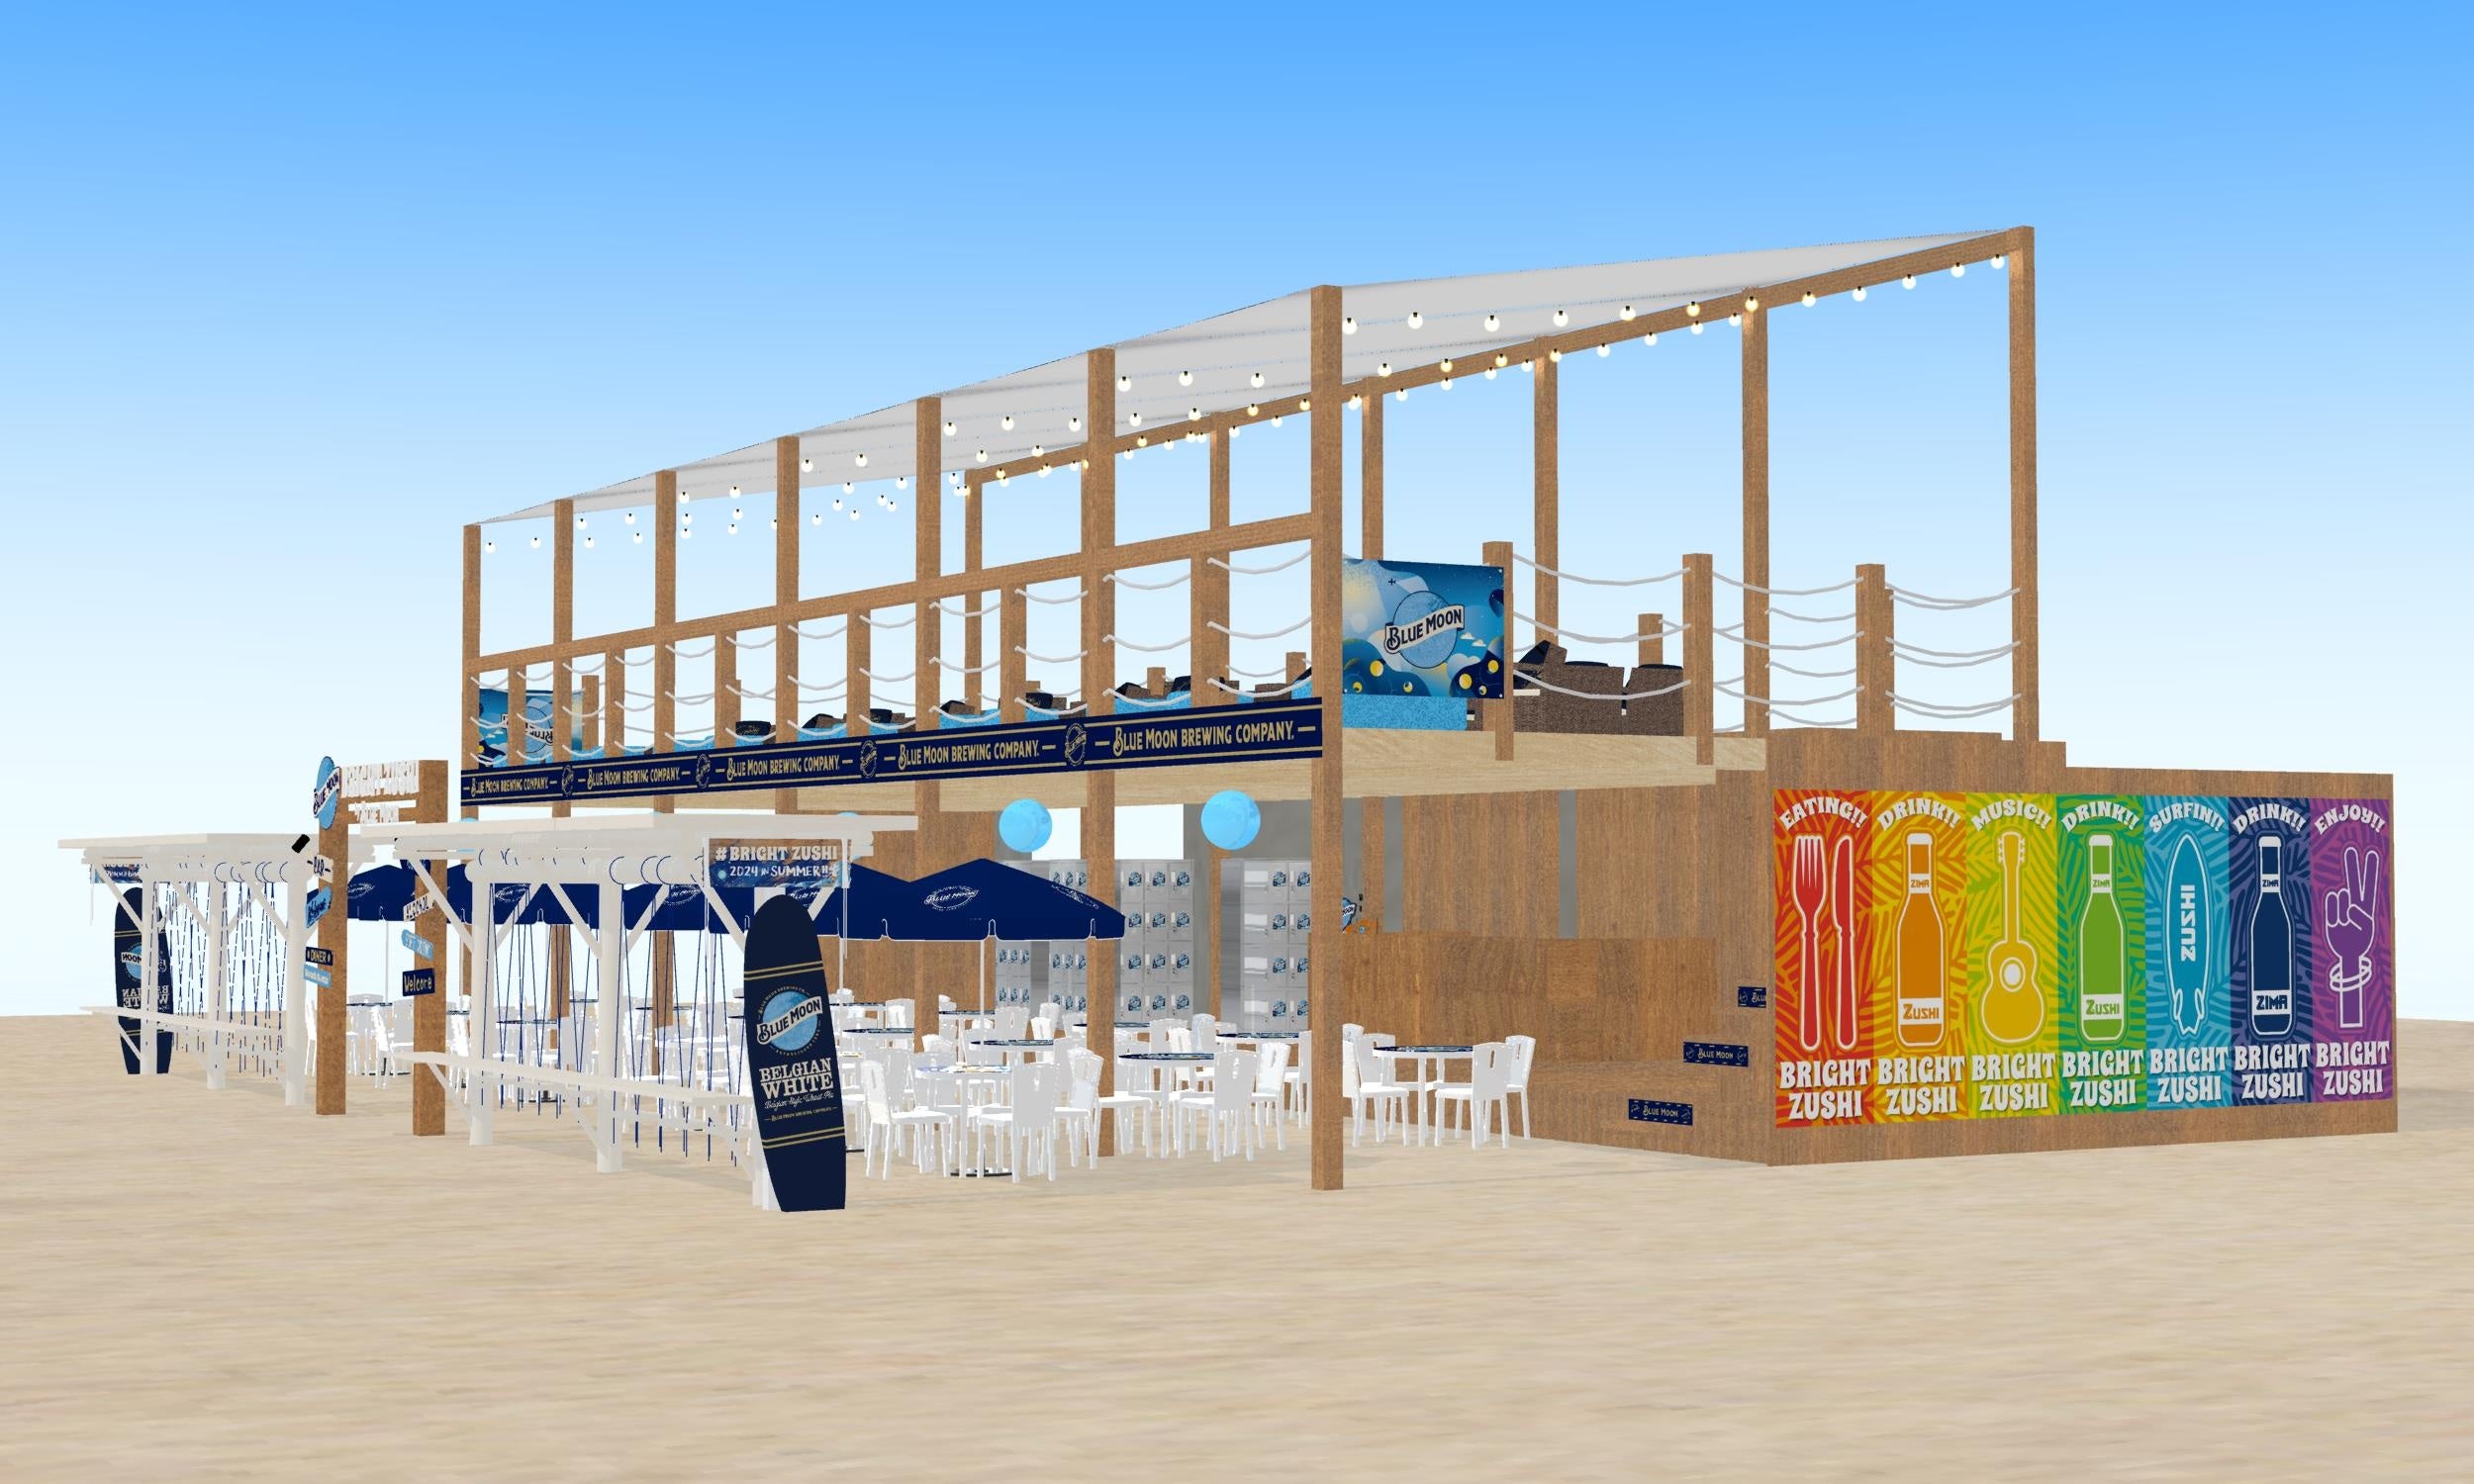 米国No.1クラフトビールBLUE MOONを楽しめるラグジュアリーな海の家「BRIGHT ZUSHI by BLUE MOON」が逗子海岸...